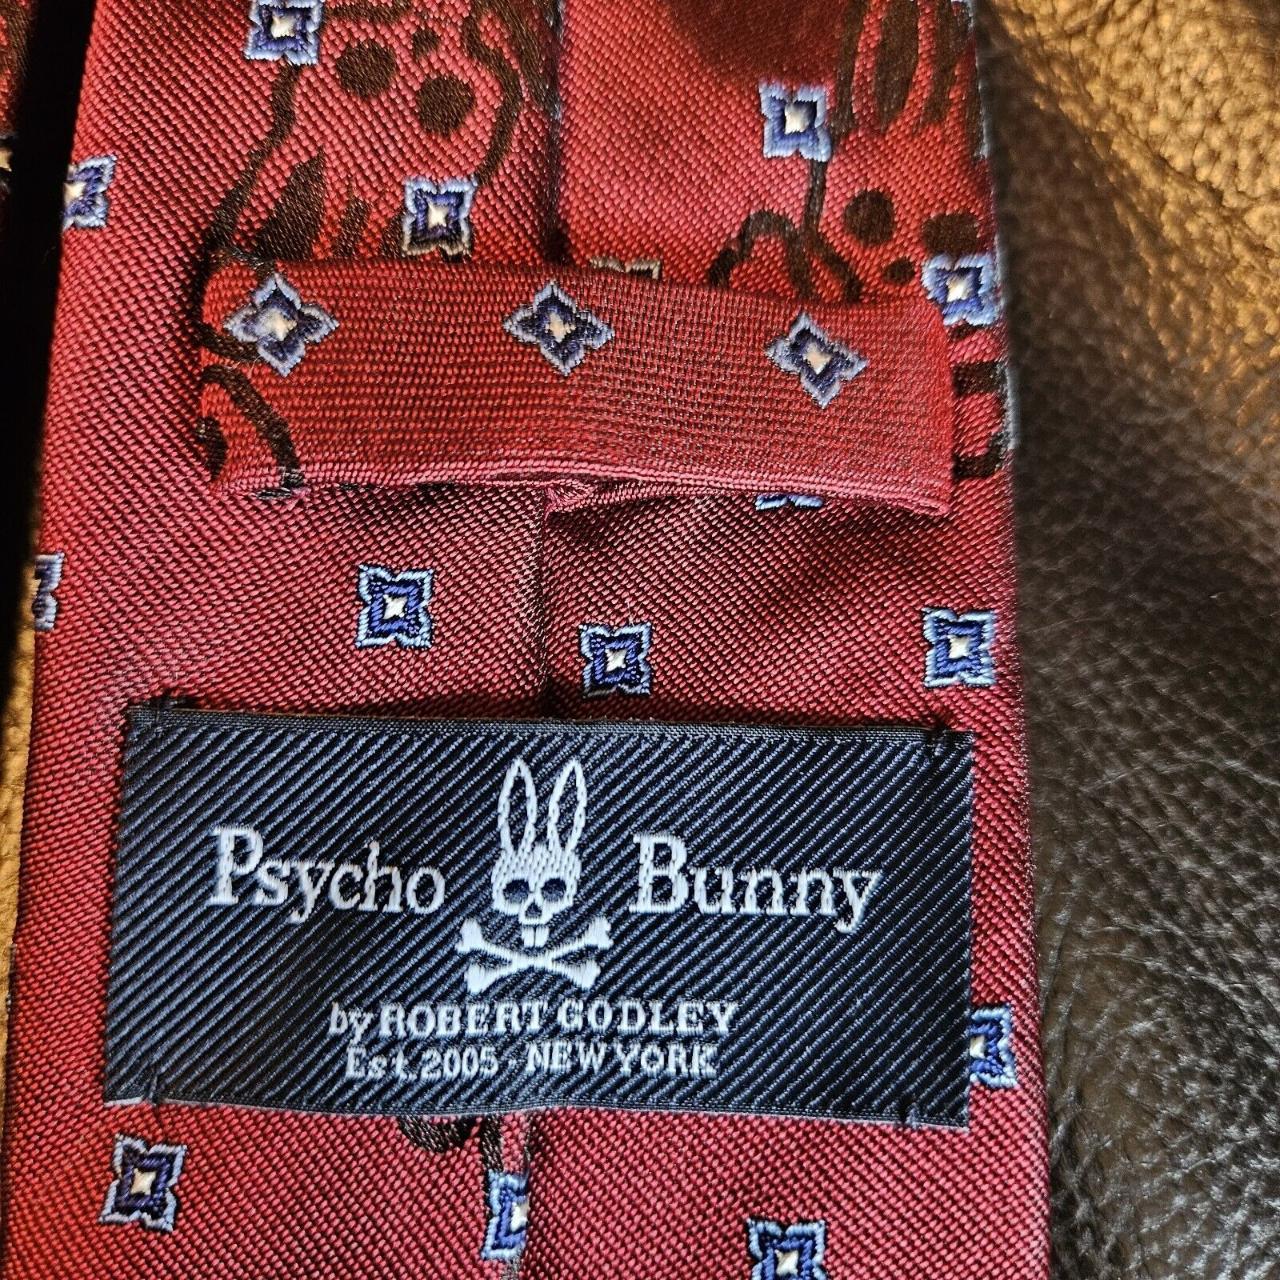 Psycho Bunny By Robert Godley Novelty Tie. - Depop